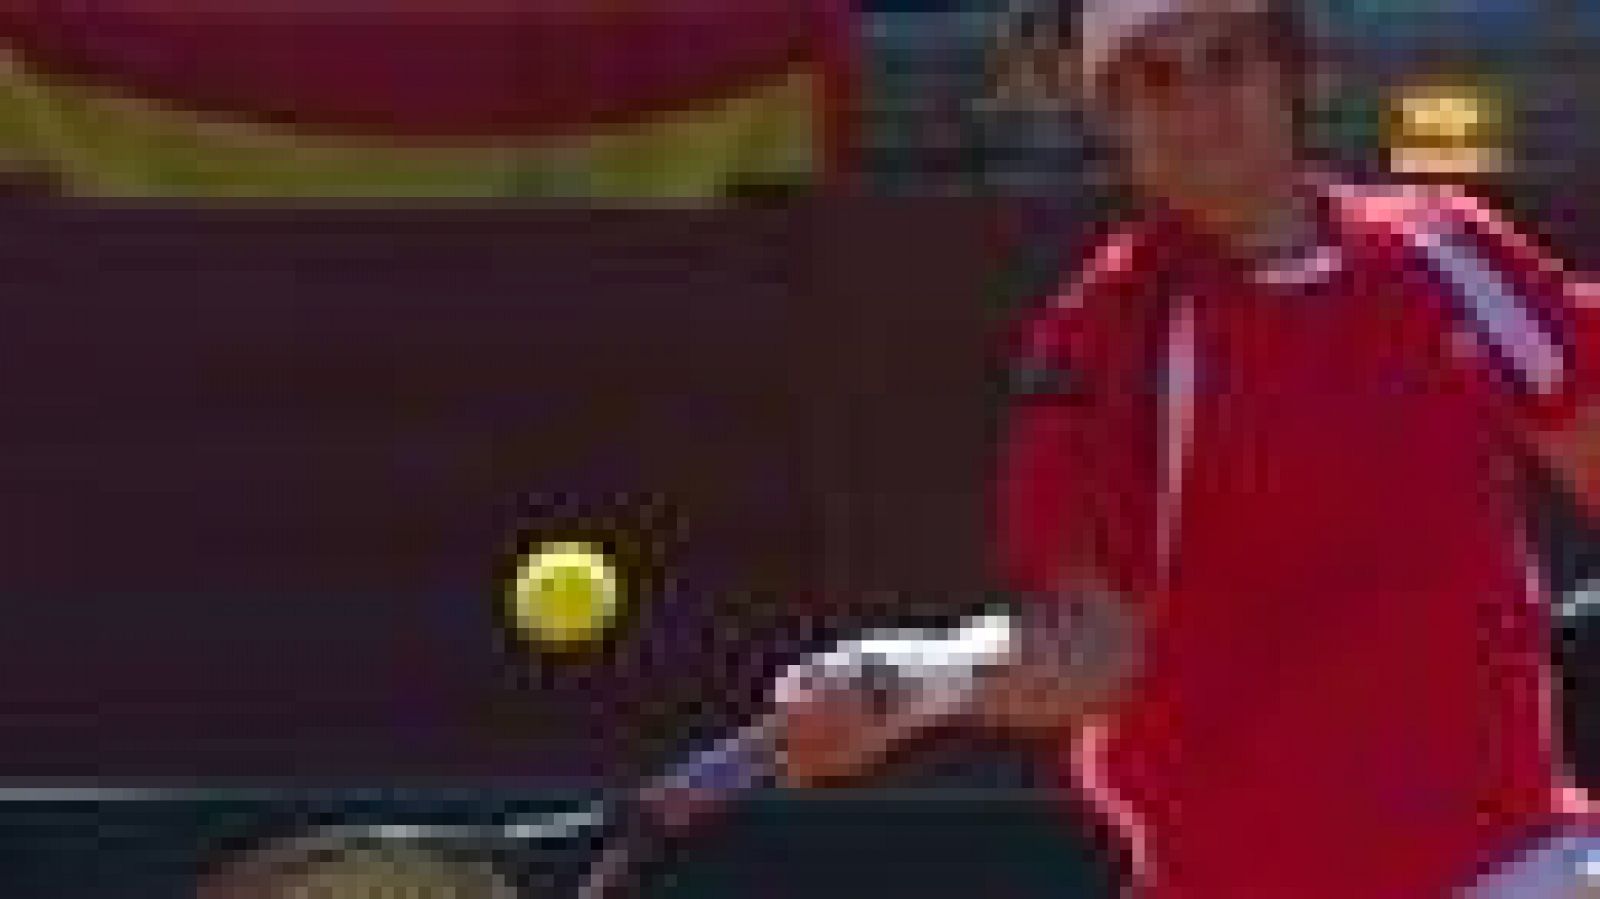 David Ferrer ha conseguido el segundo punto para el equipo español de Copa Davis (2-0) tras ganar al francés Gilles Simon por 6-1, 6-4 y 6-1.